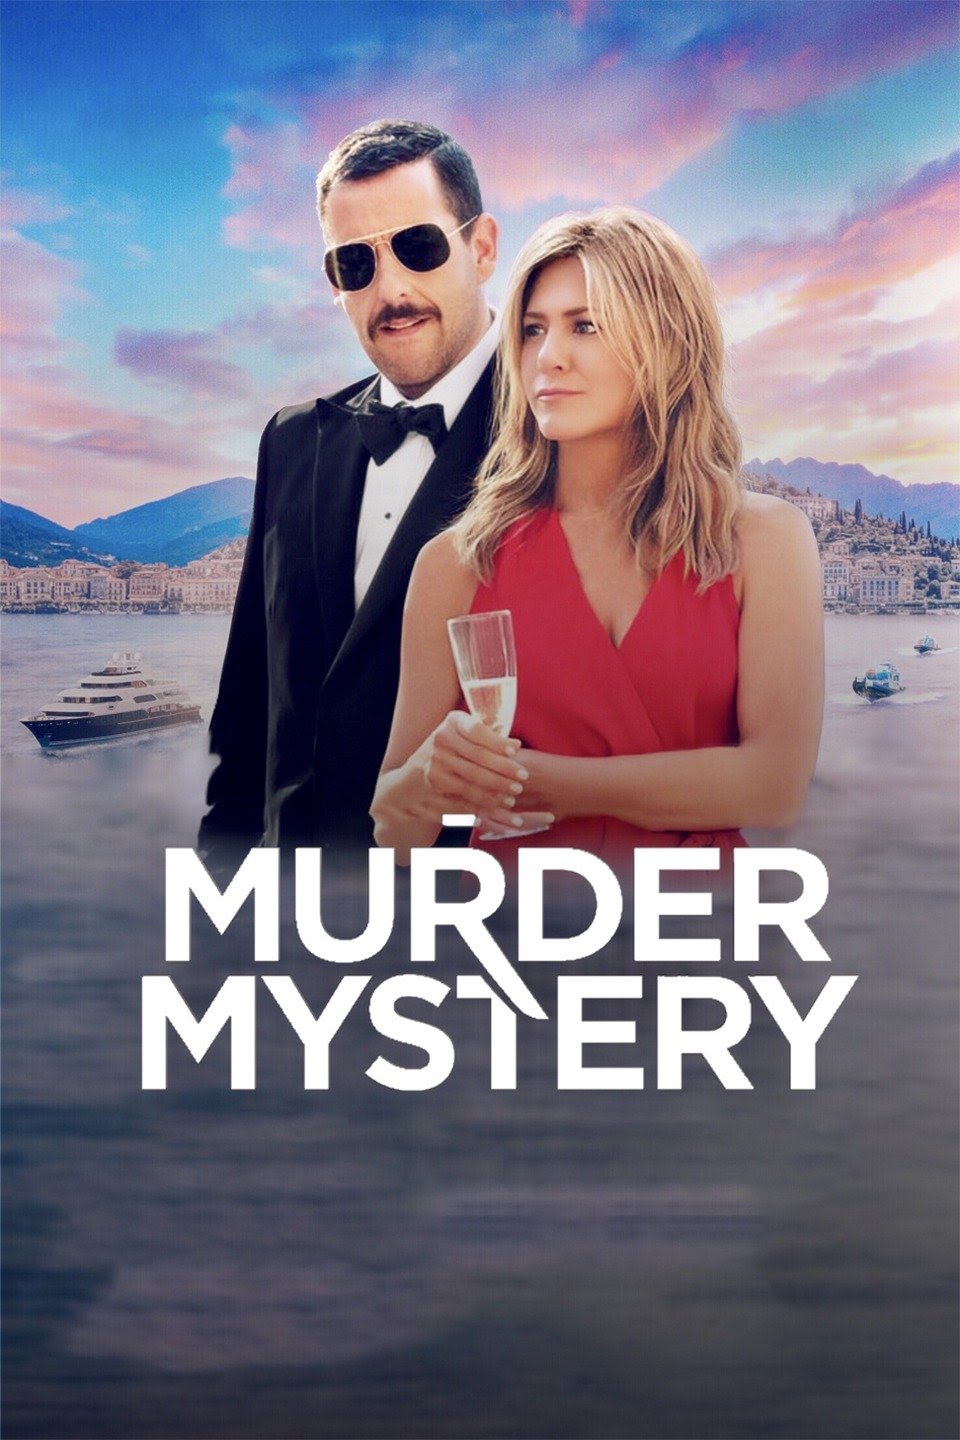 Murder mystery movie